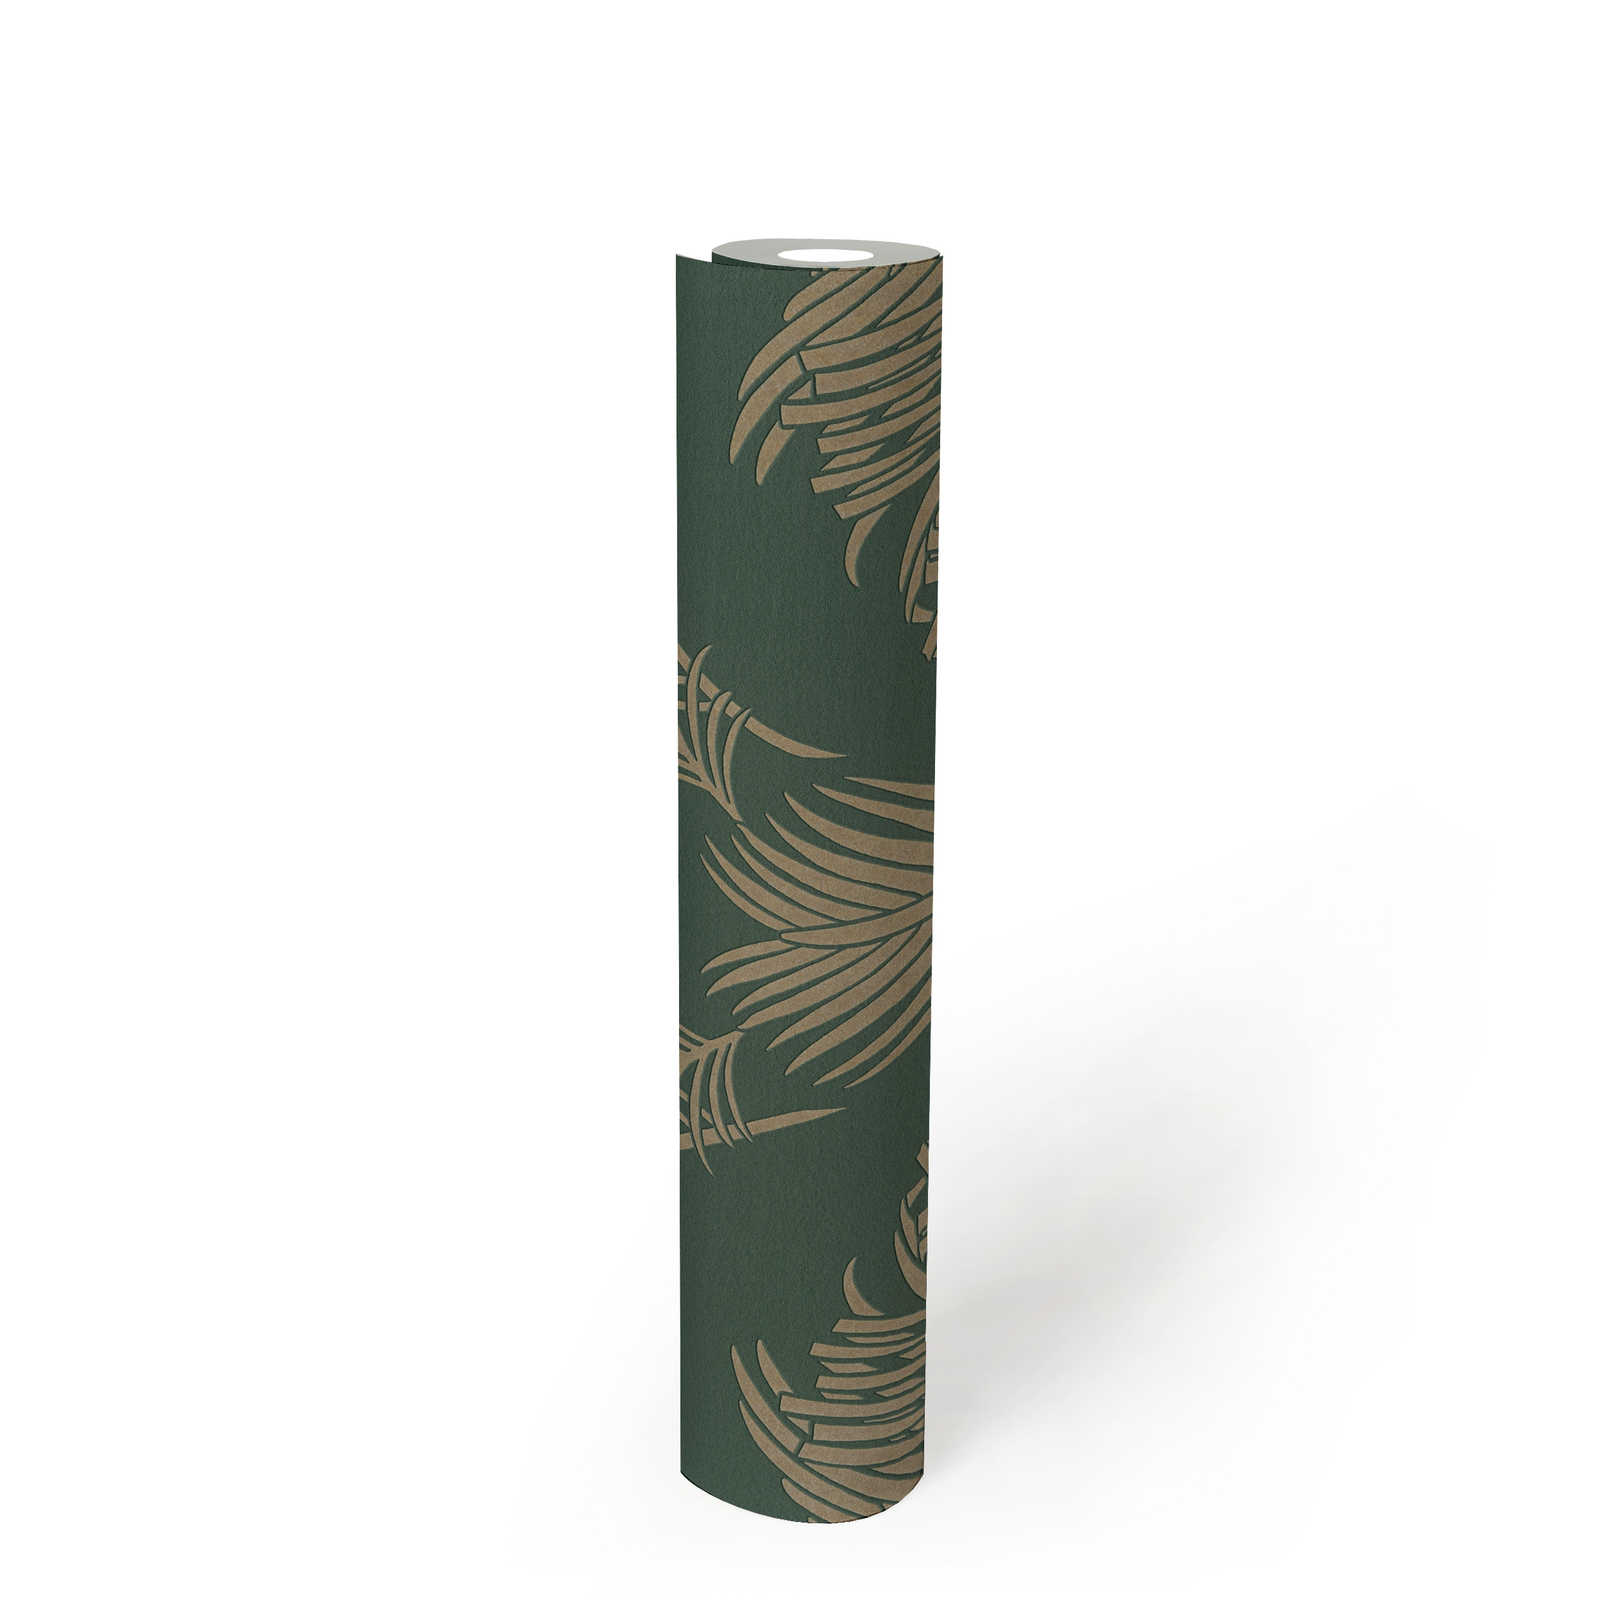             Carta da parati in tessuto non tessuto in abete verde e oro con motivo di foglie di palma - verde, metallizzato
        